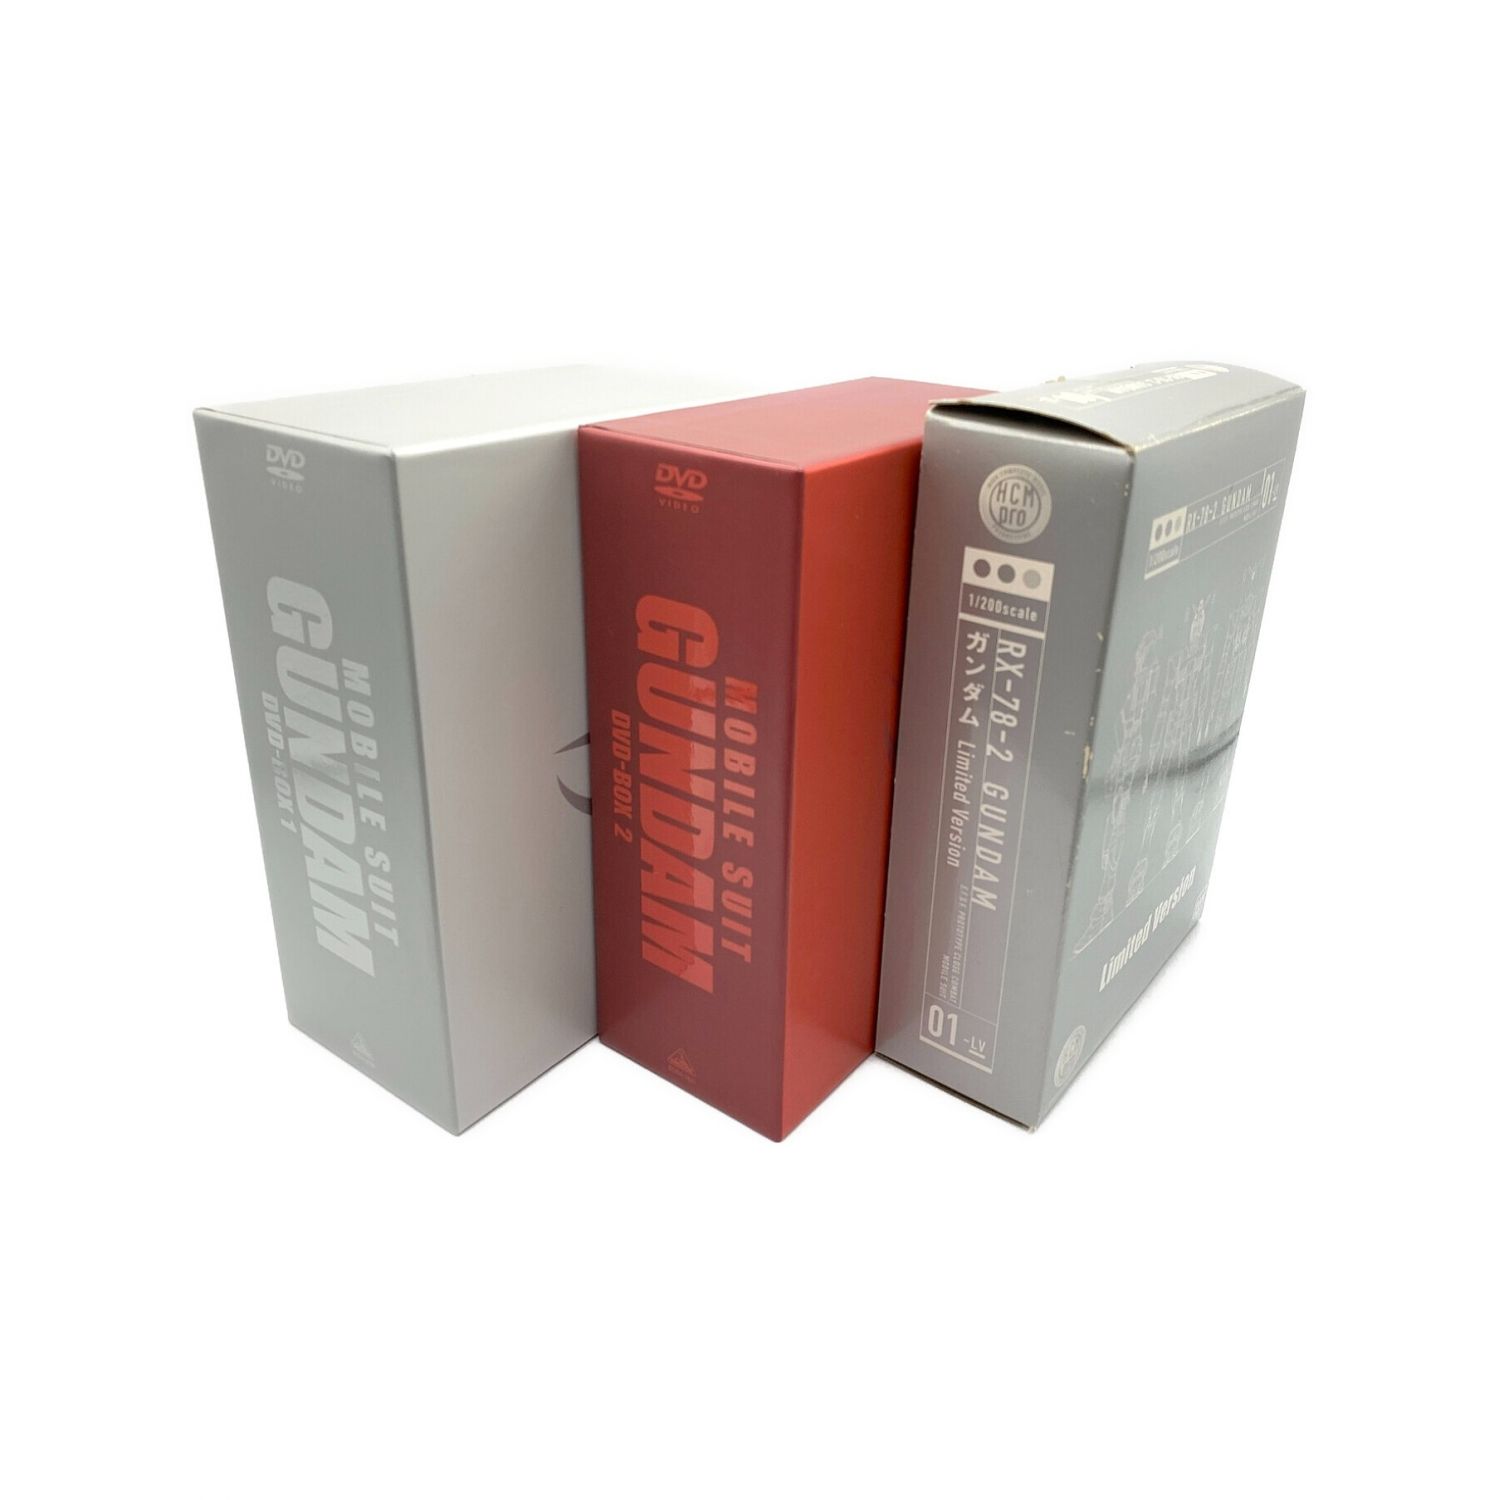 機動戦士ガンダム DVD-BOX 1とDVD-BOX 2〈初回限定生産〉 - アニメ